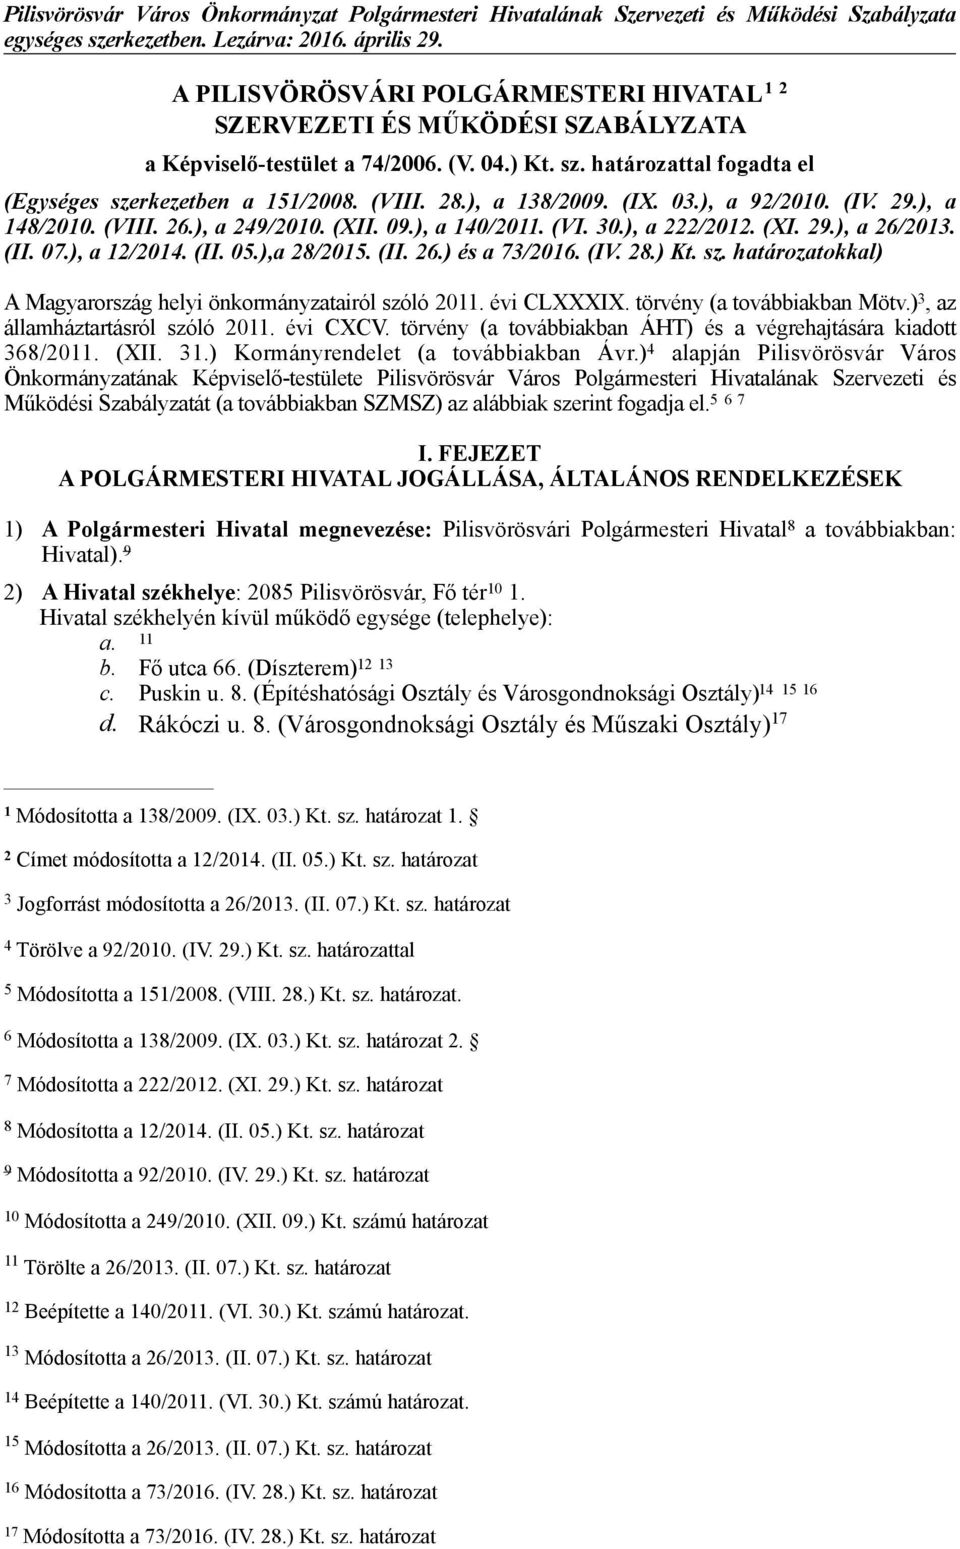 (II. 26.) és a 73/2016. (IV. 28.) Kt. sz. határozatokkal) A Magyarország helyi önkormányzatairól szóló 2011. évi CLXXXIX. törvény (a továbbiakban Mötv.) 3, az államháztartásról szóló 2011. évi CXCV.